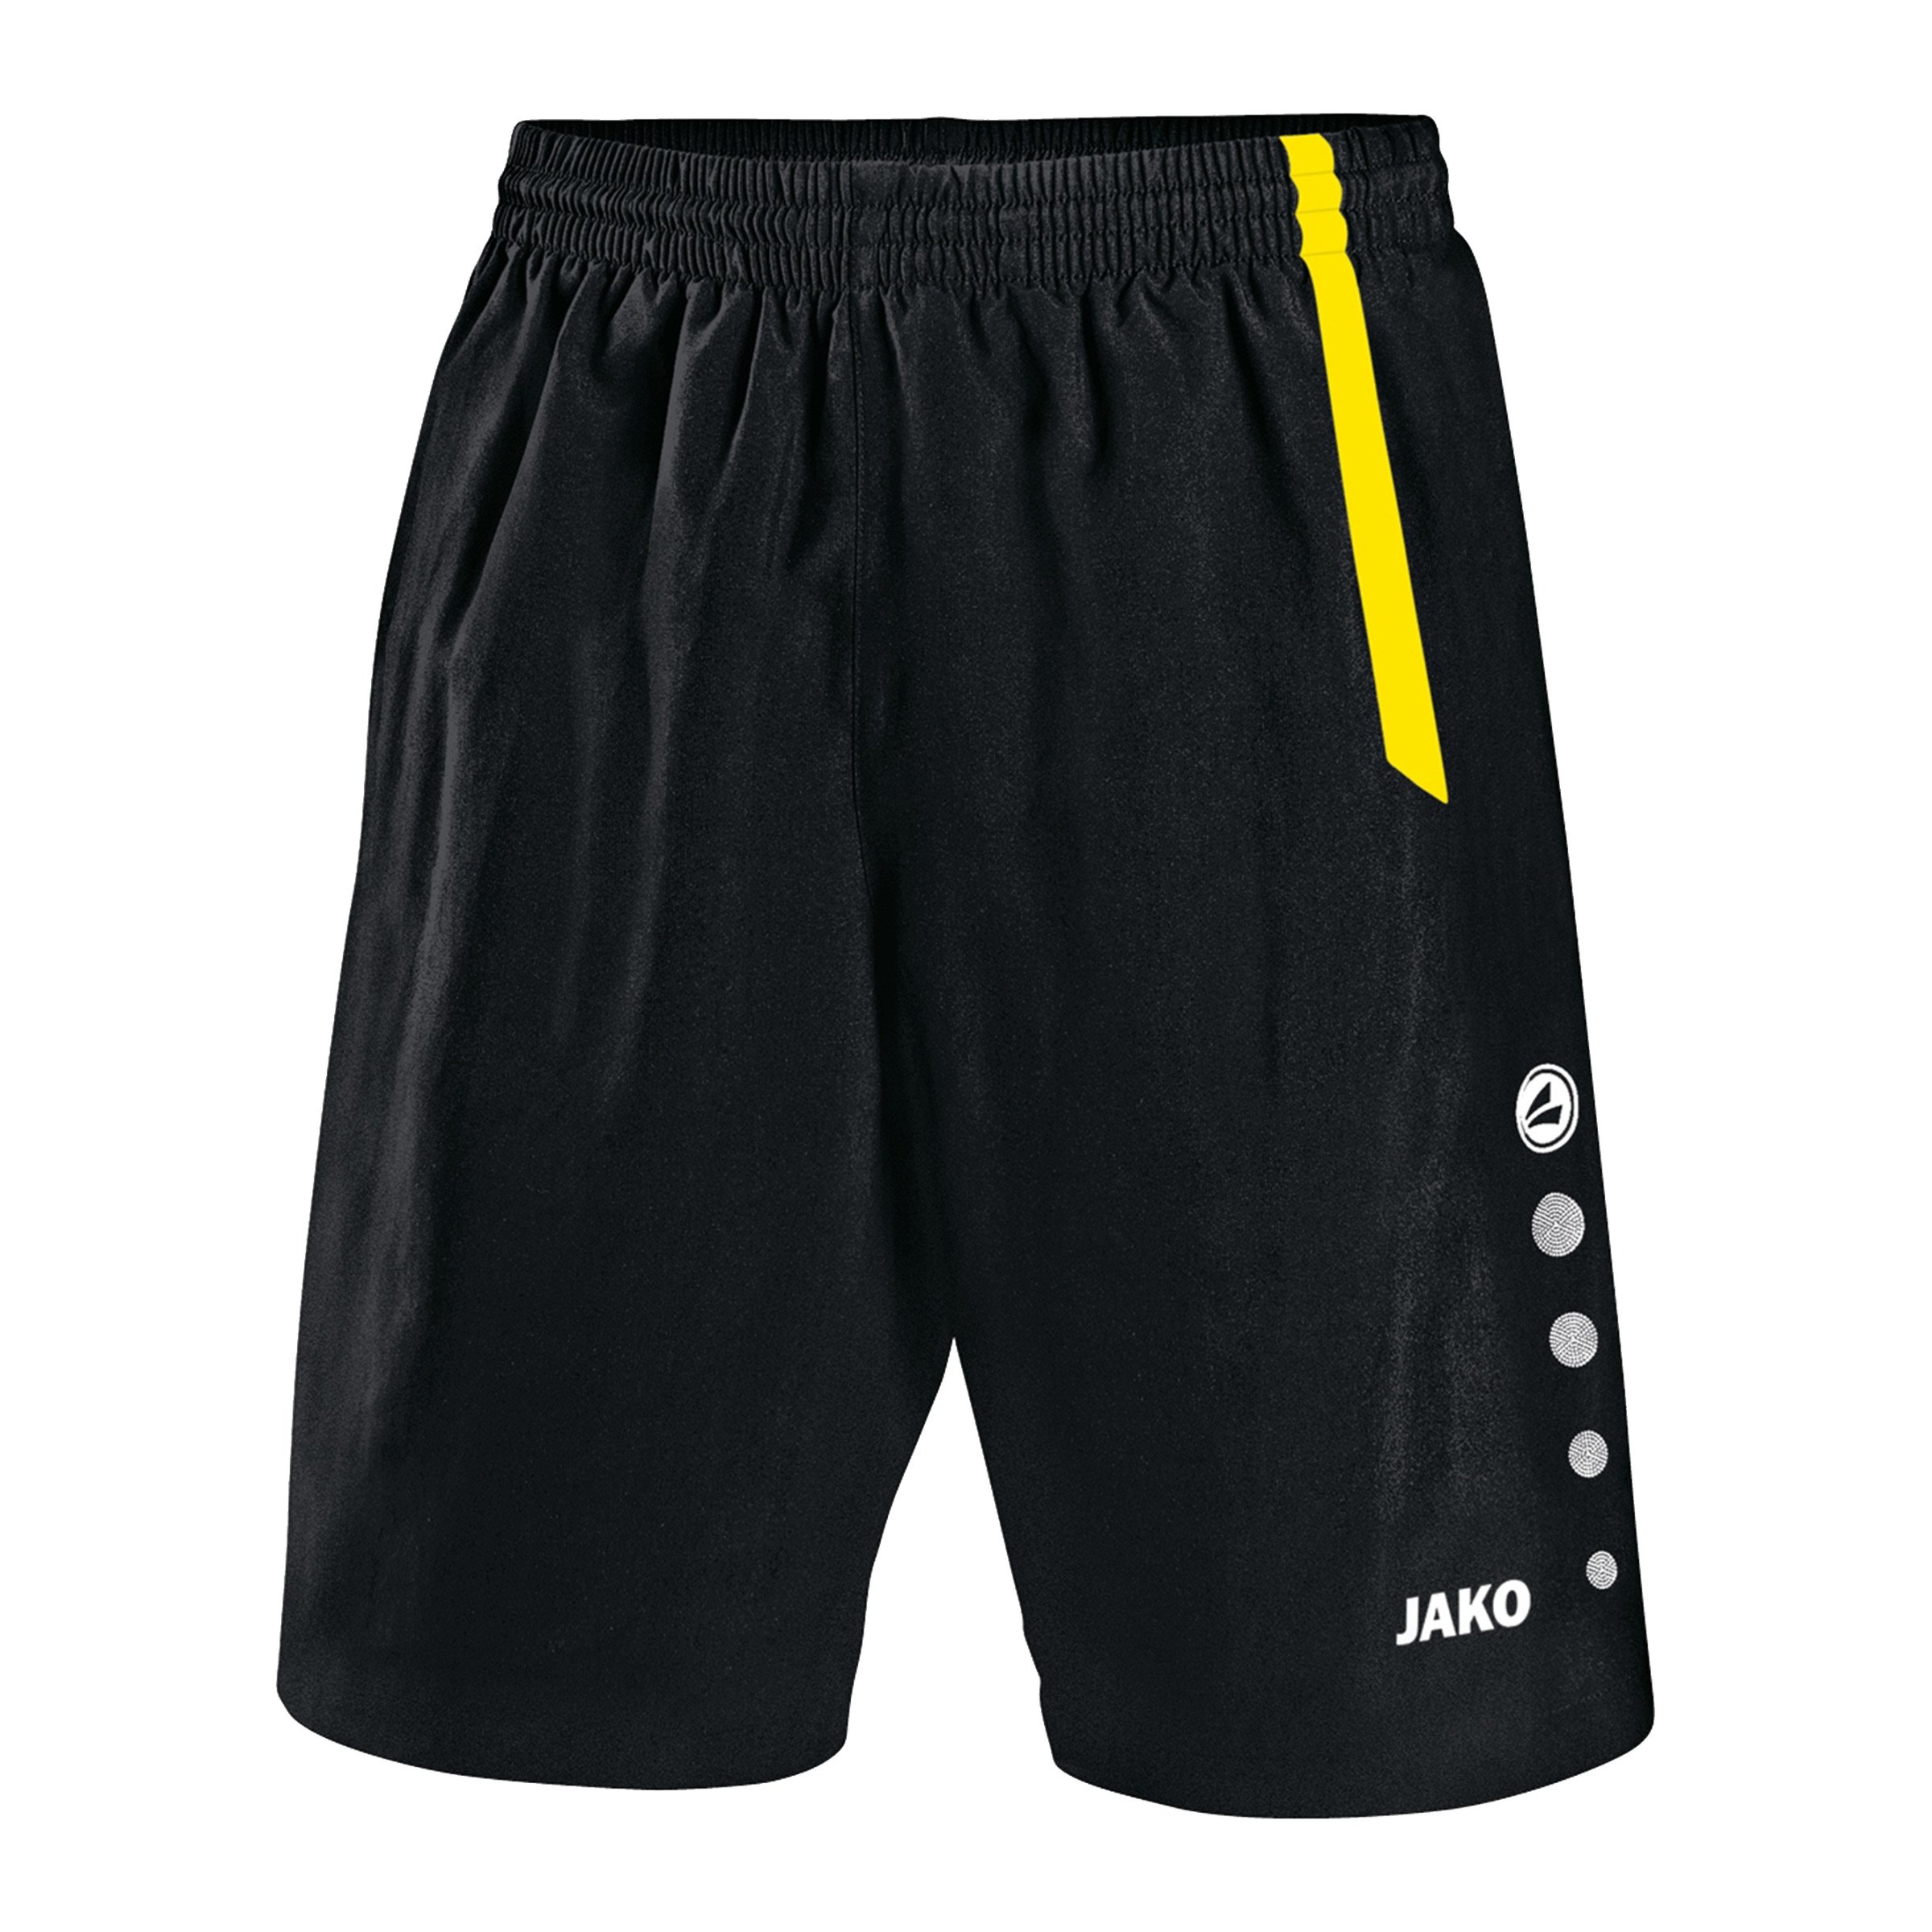 JAKO Sporthose Herren Short Turin Shorts Hose schwarz/citro Trainingshose 4462 